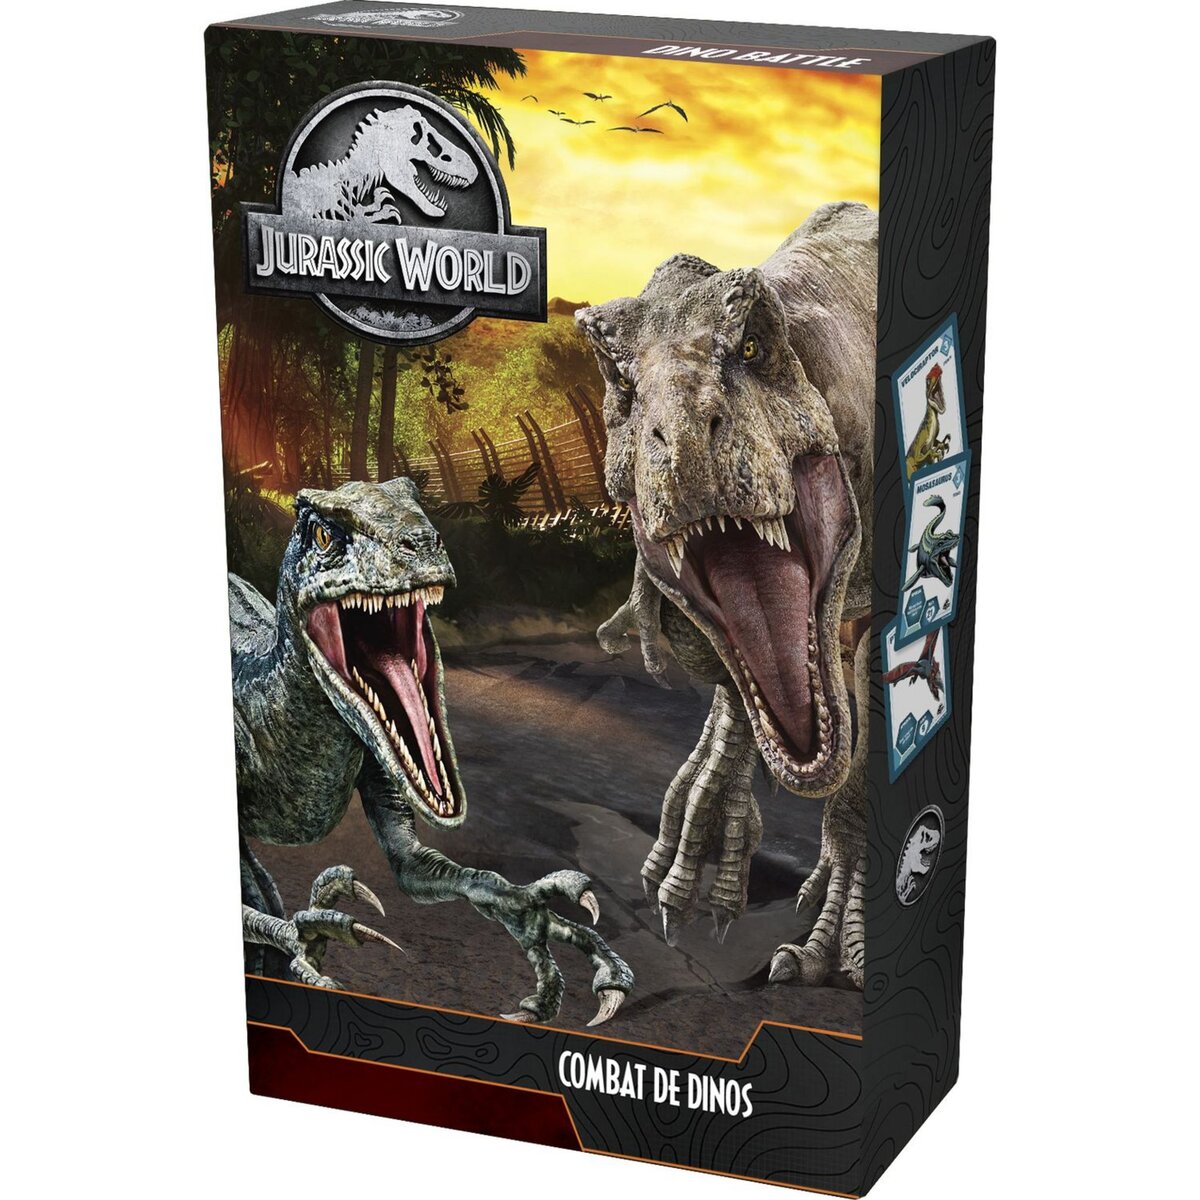 Combat de Dinos Jurassic World Topi Games : King Jouet, Jeux de plateau  Topi Games - Jeux de société